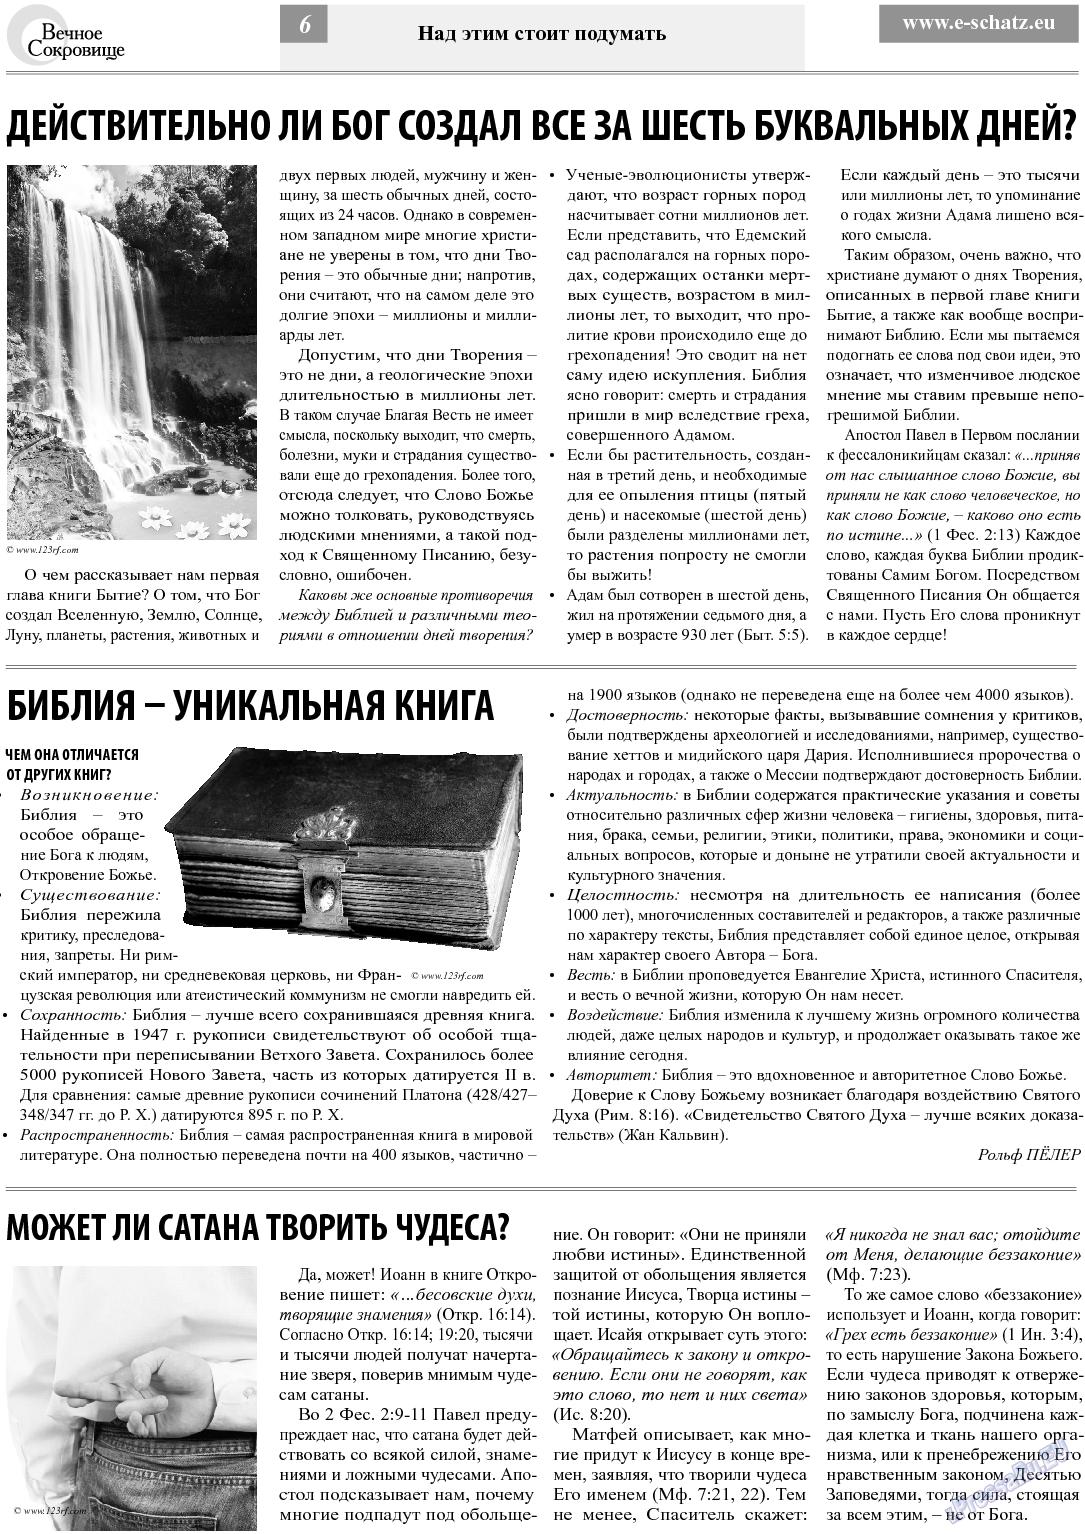 Вечное сокровище, газета. 2013 №6 стр.6